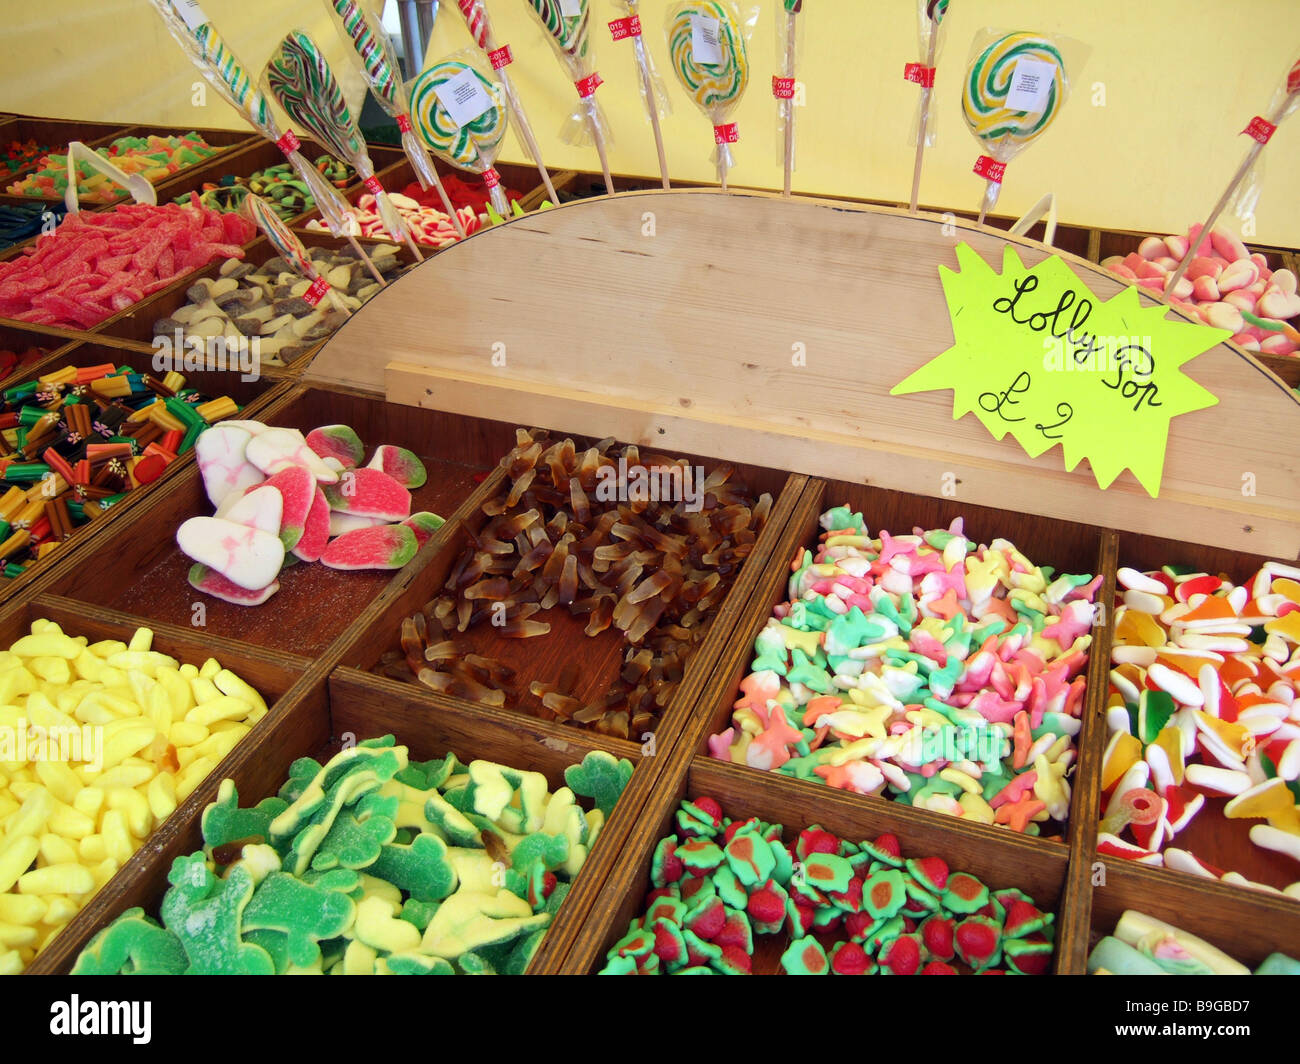 Une sélection de bonbons confiserie / bonbons / at a market stall. Banque D'Images